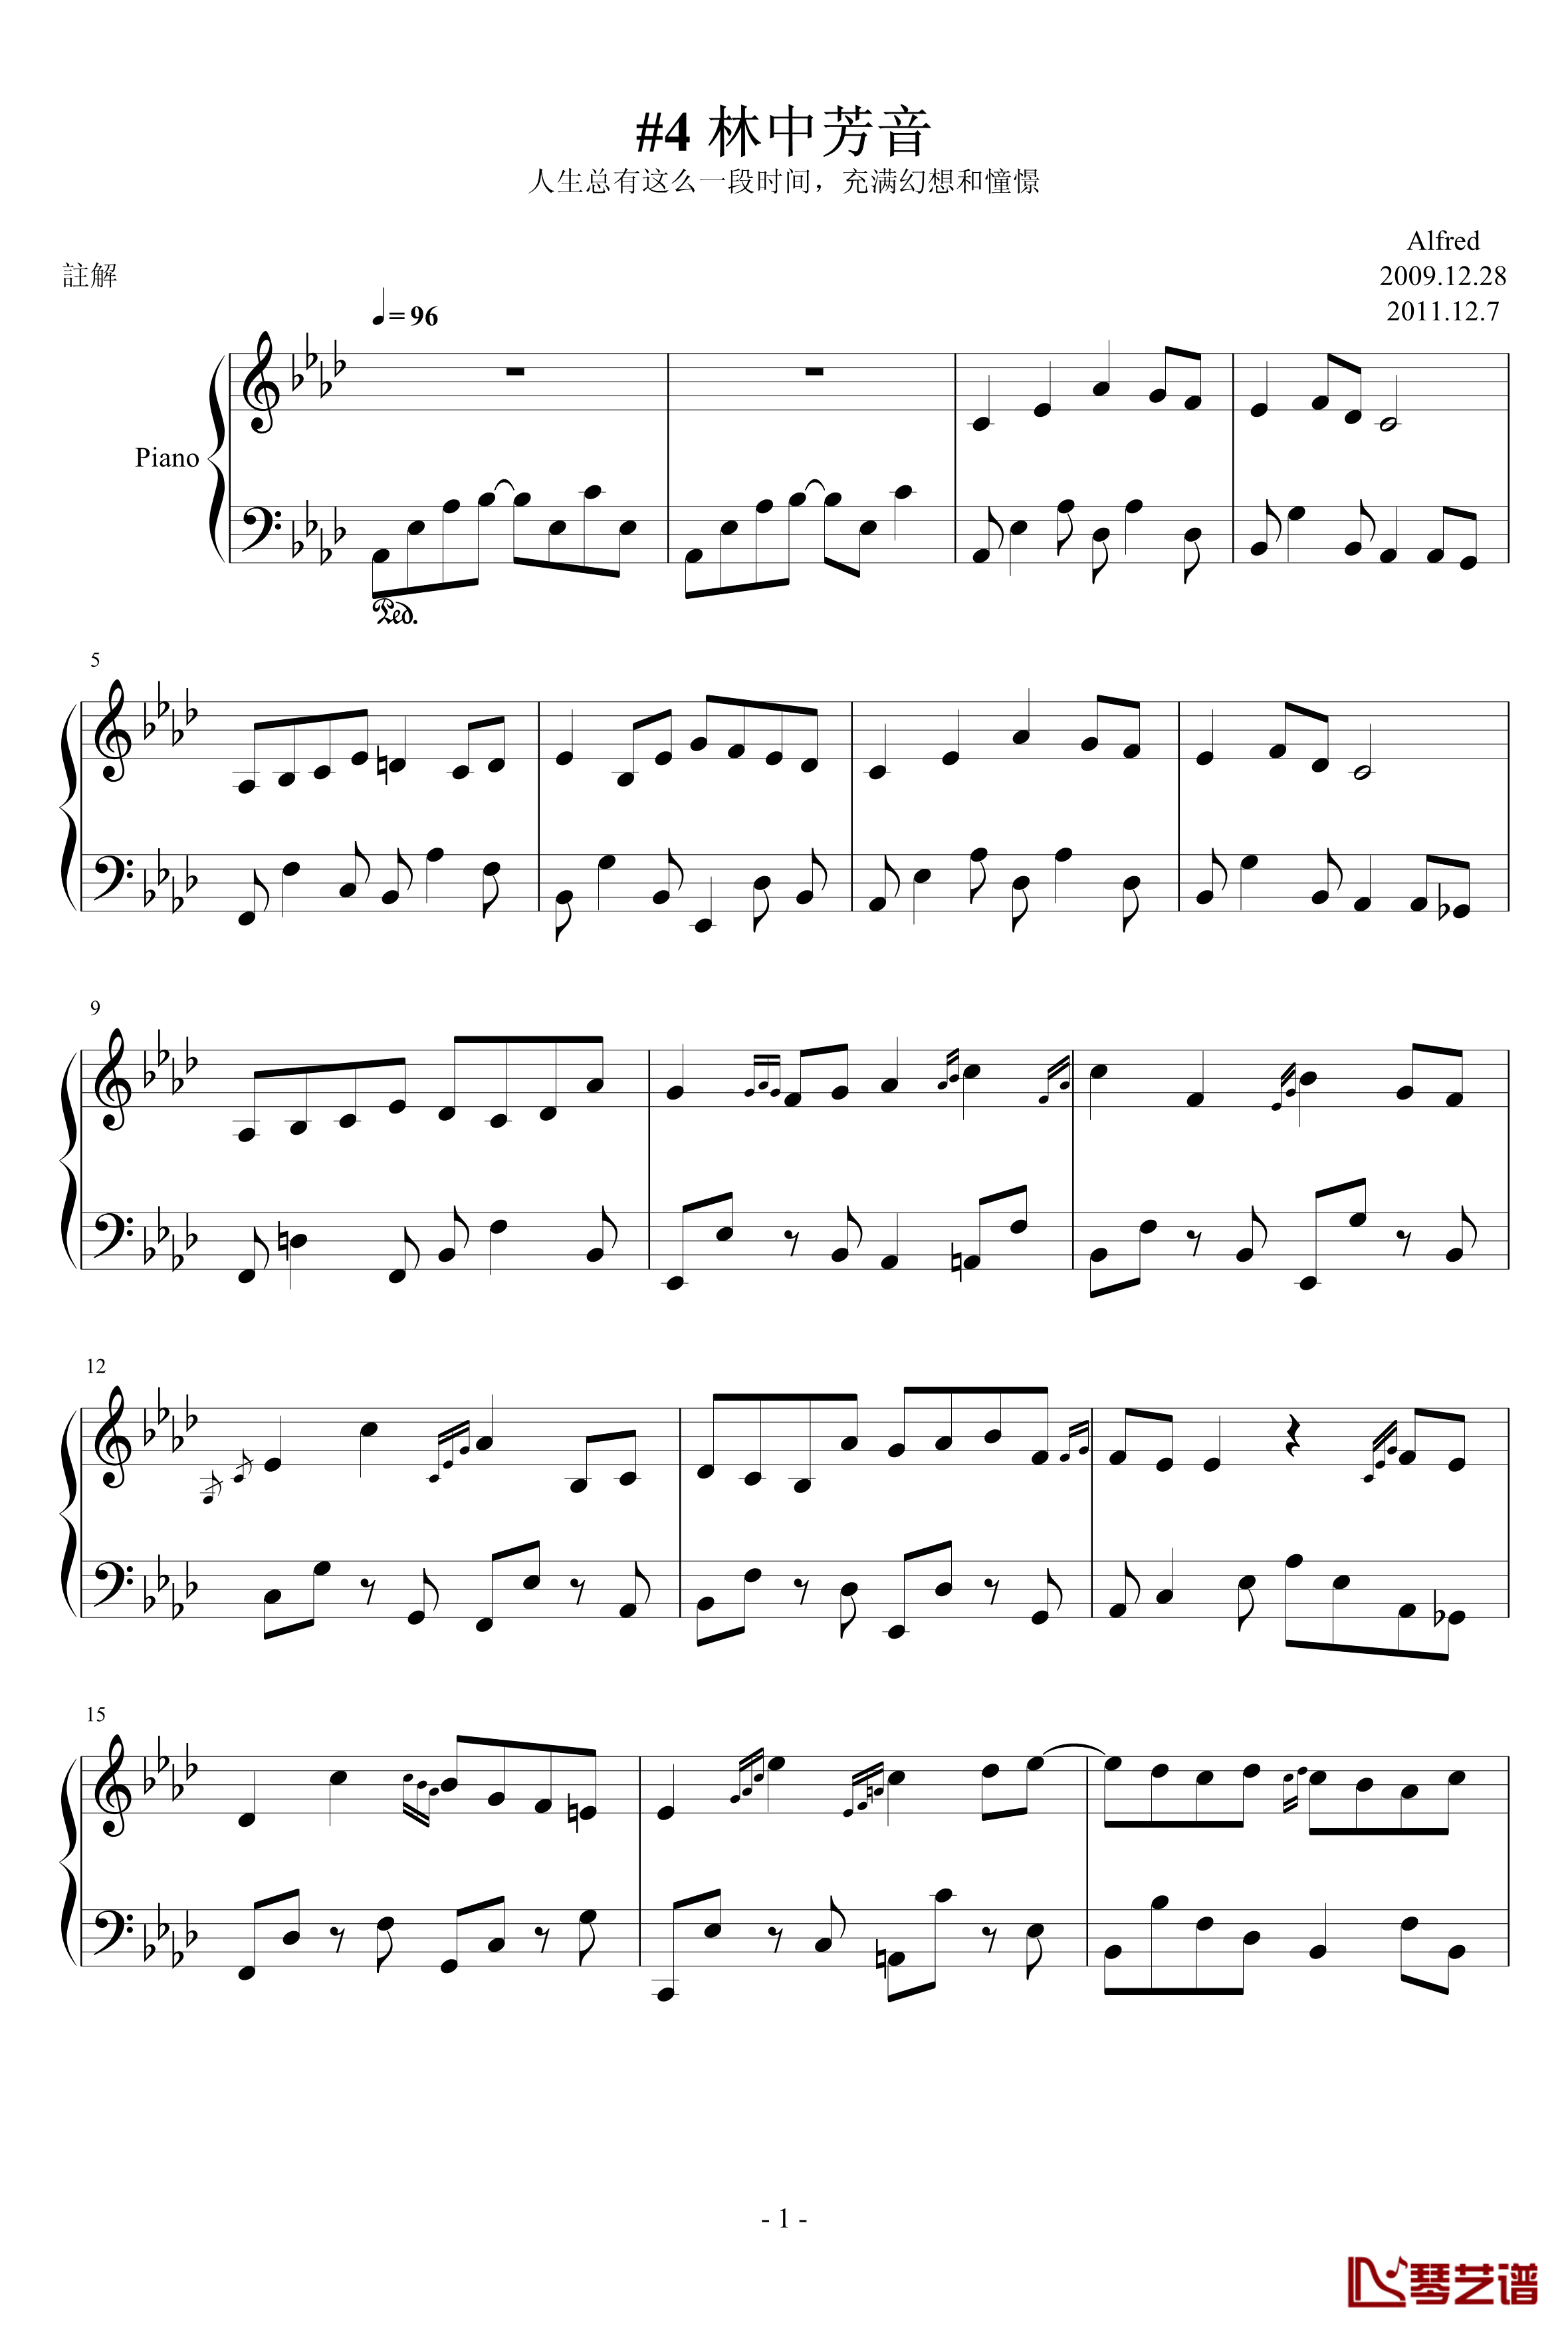 4林中芳音钢琴谱-AlfredAria1